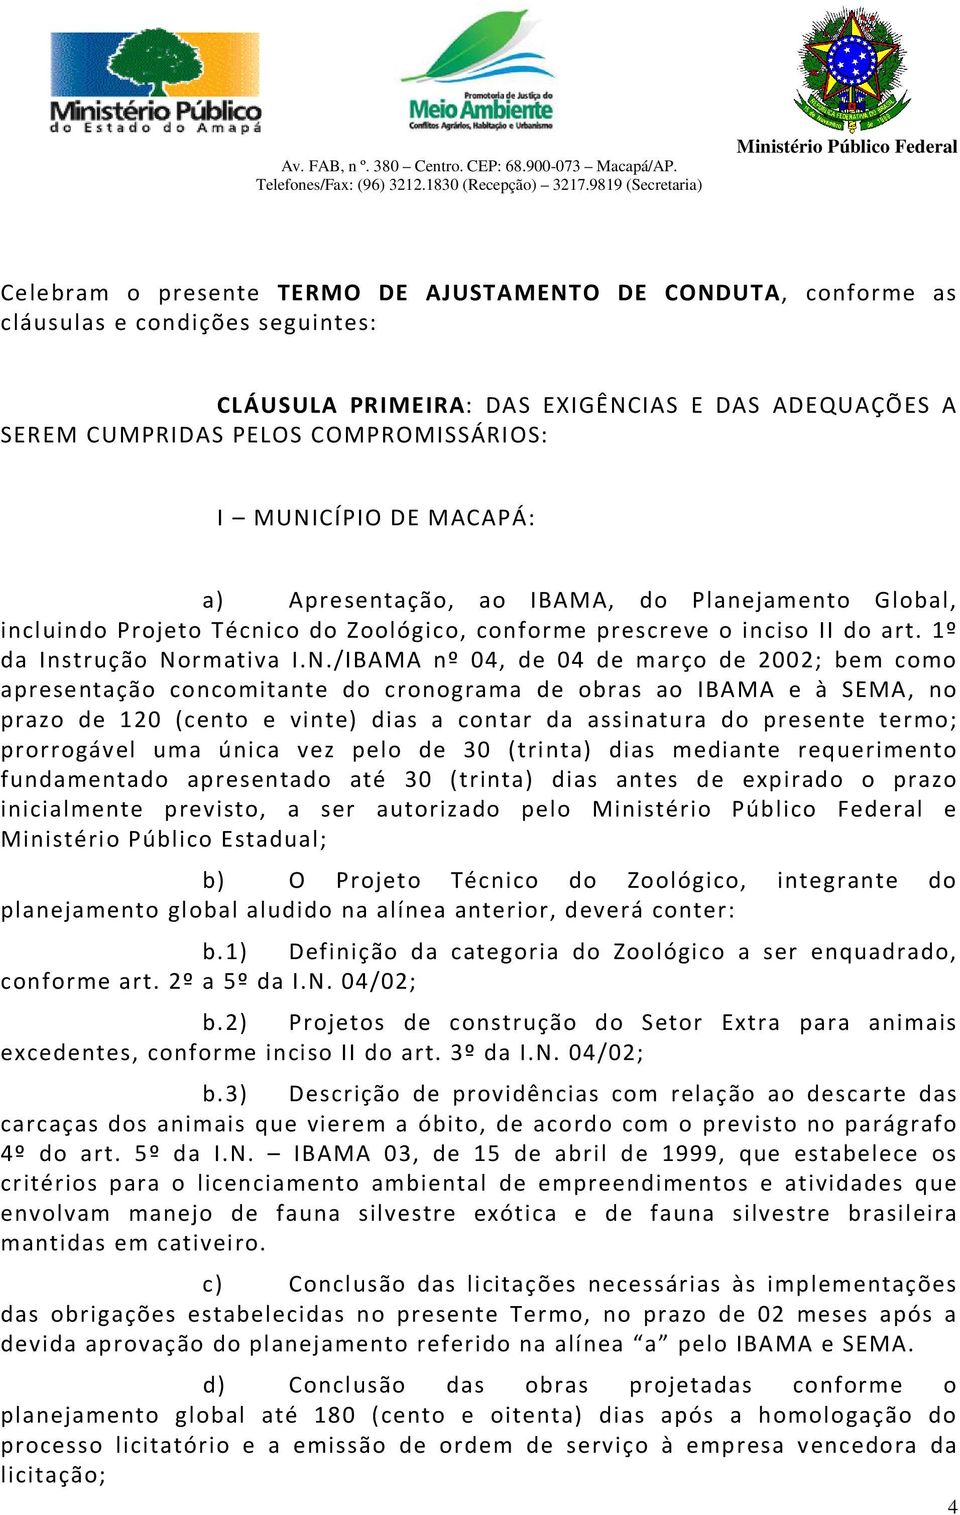 04 de março de 2002; bem como apresentação concomitante do cronograma de obras ao IBAMA e à SEMA, no prazo de 120 (cento e vinte) dias a contar da assinatura do presente termo; prorrogável uma única